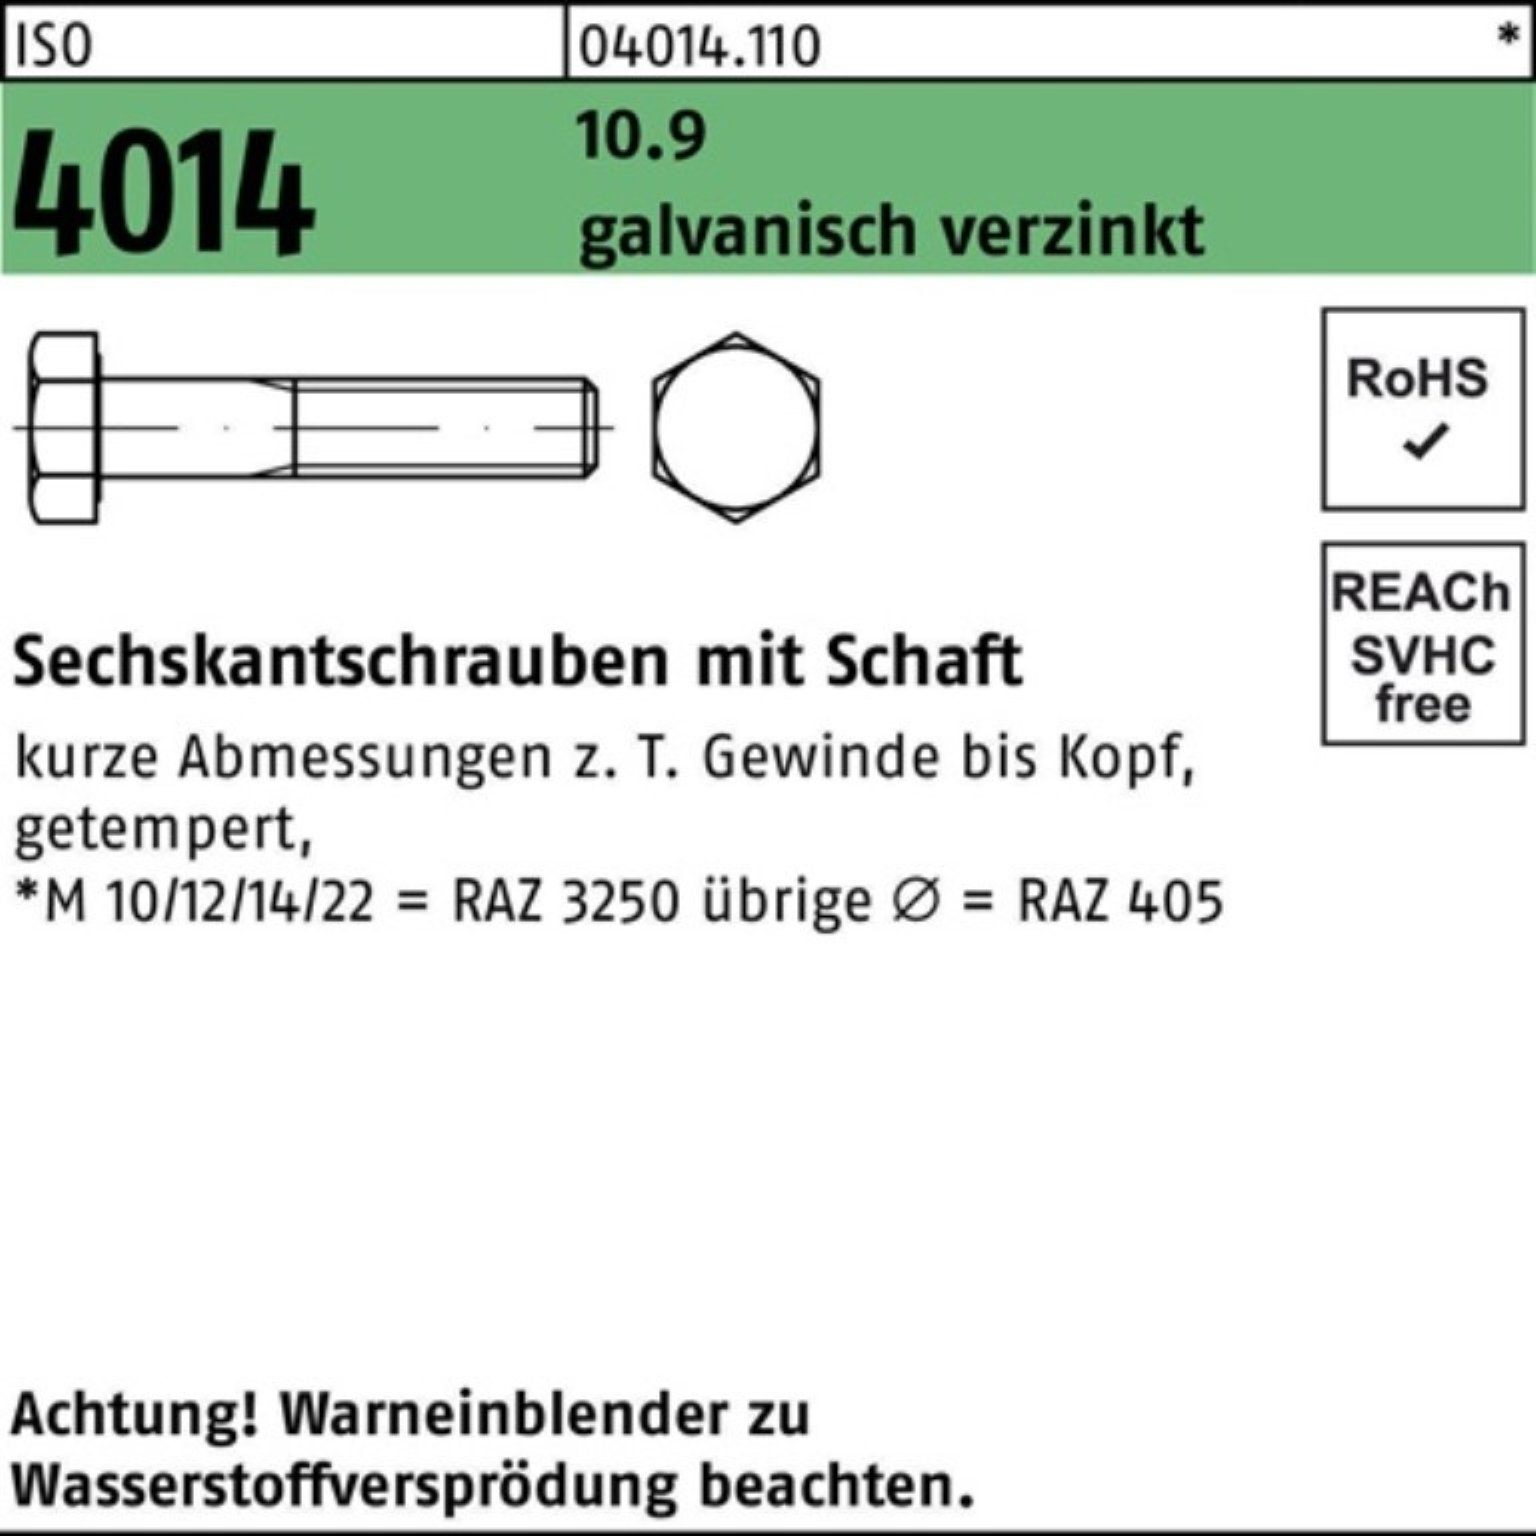 1 Schaft Sechskantschraube 4014 M8x Bufab ISO galv.verz. 100er Pack 10.9 100 Sechskantschraube